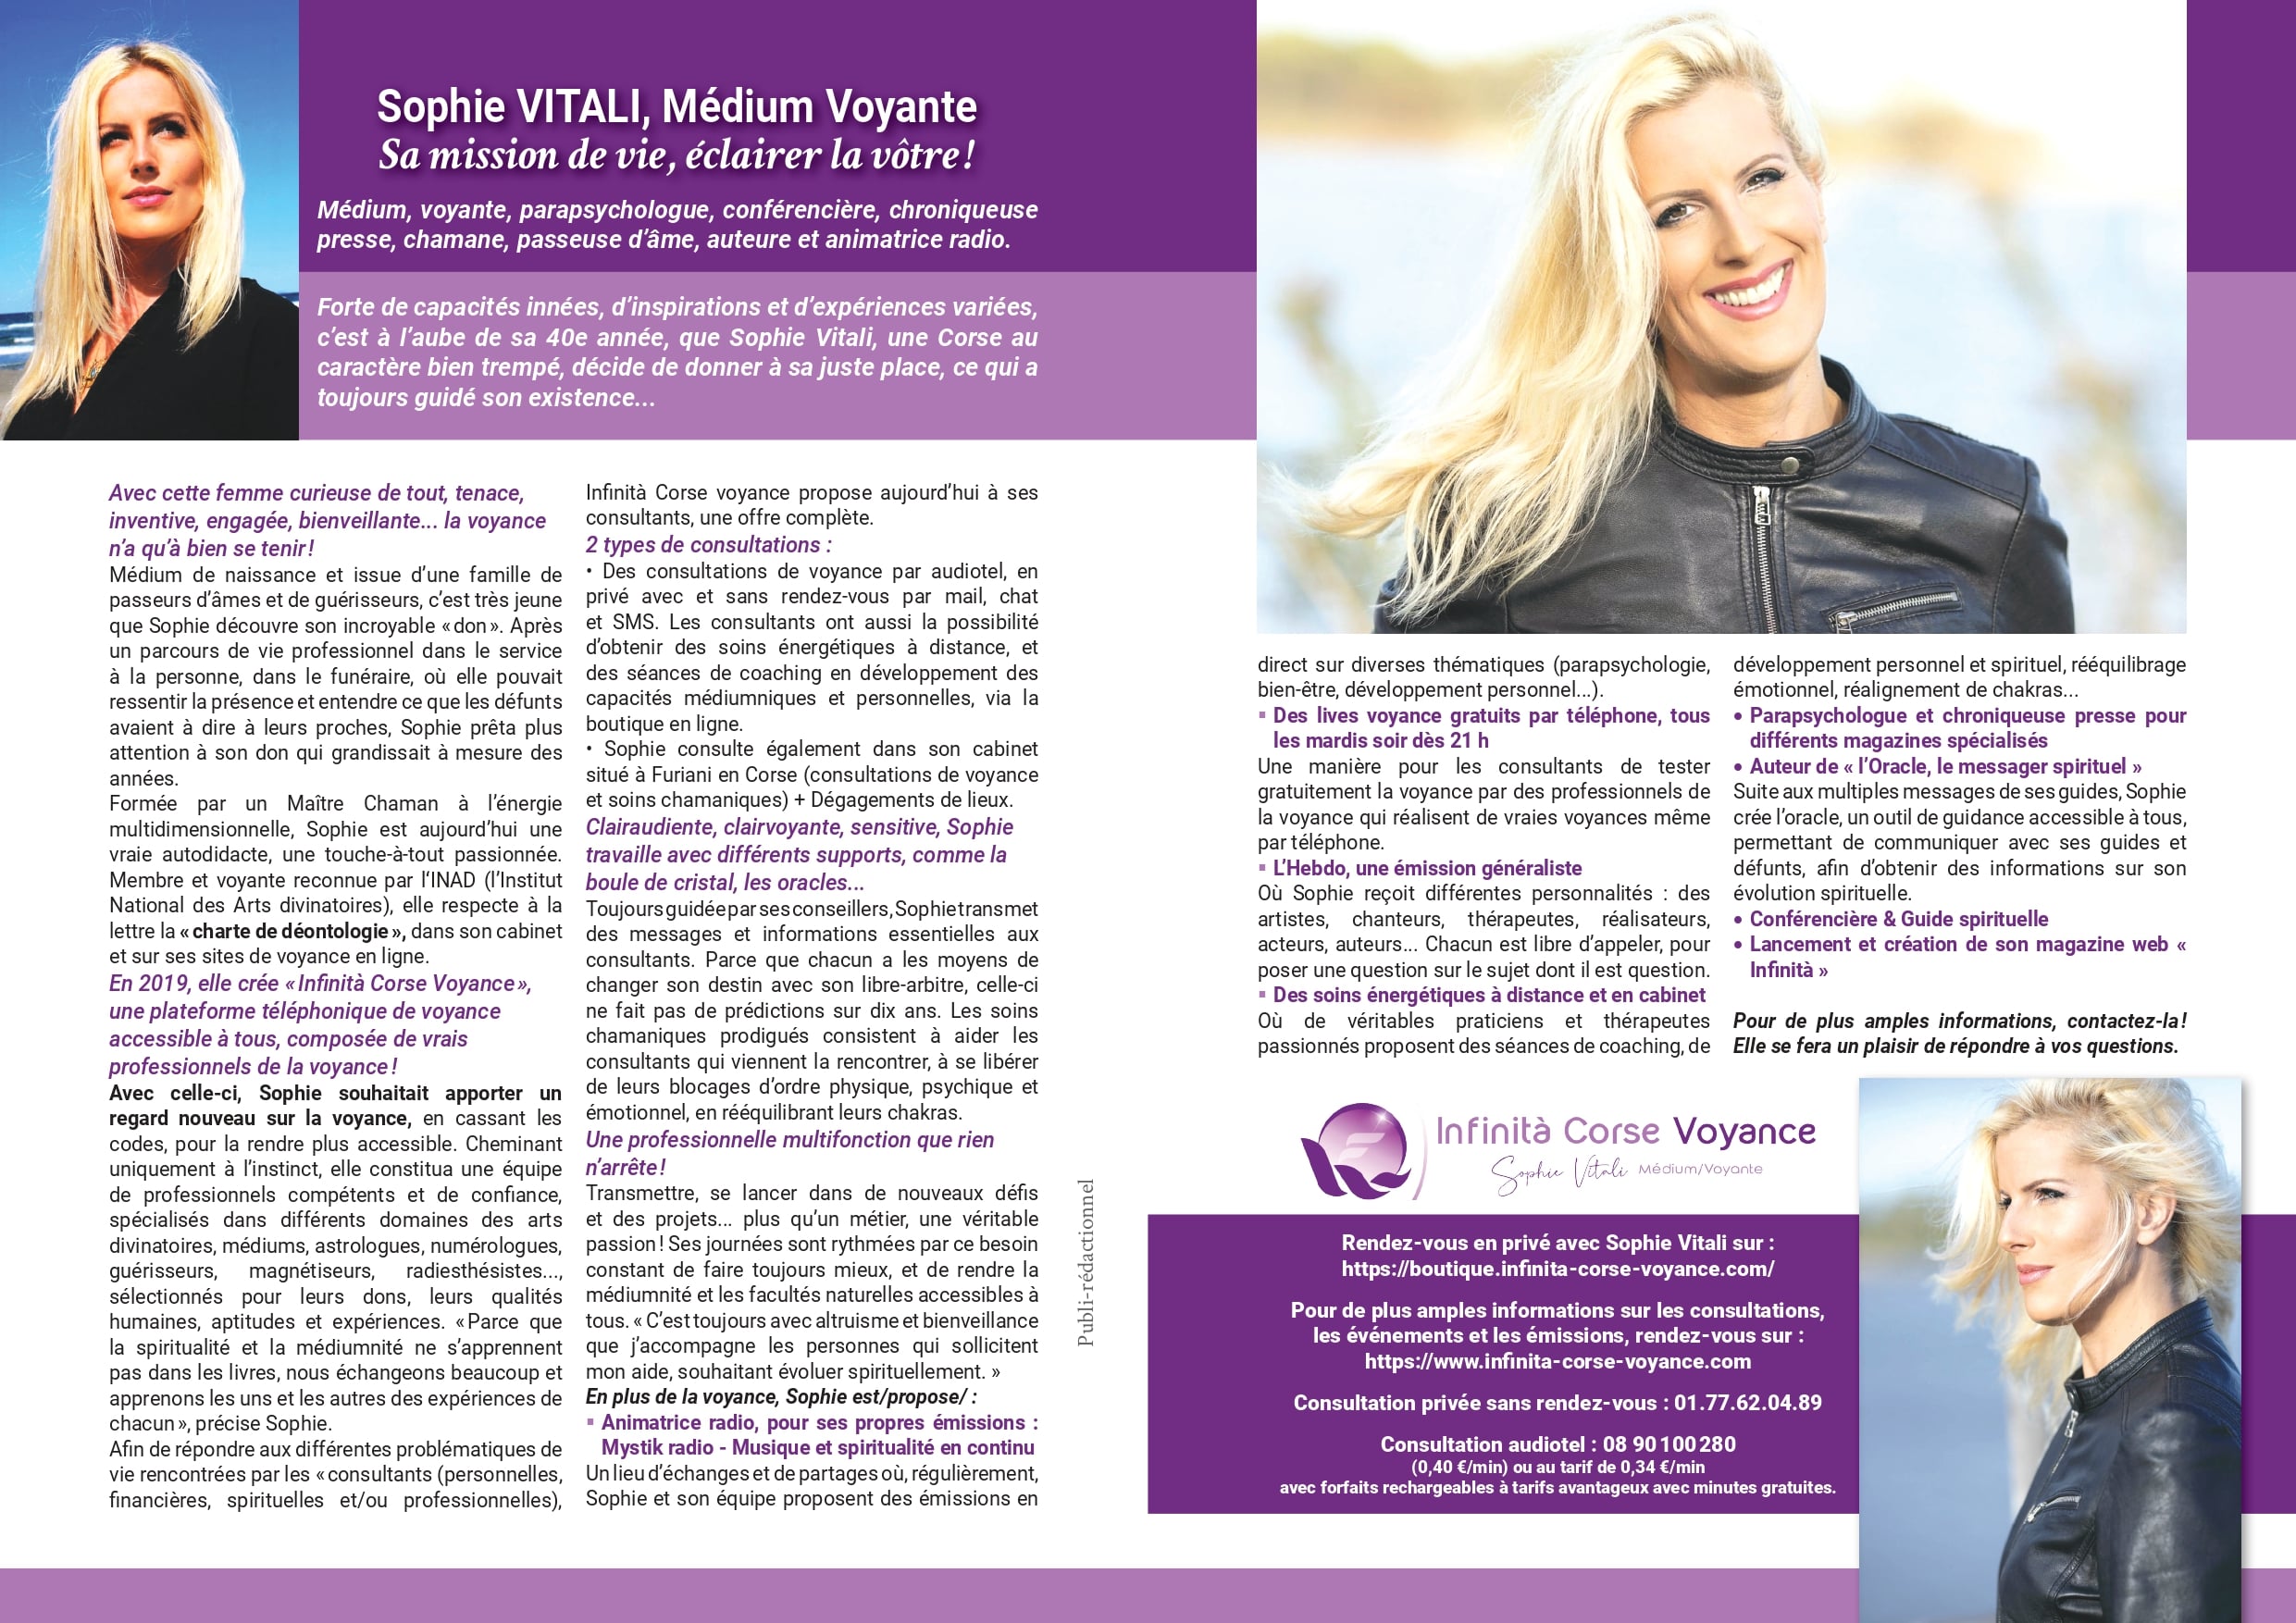 Le magazine Séniors Actuels parle de Sophie Vitali célèbre médium dans son dossier spécial voyance 01.09.2021